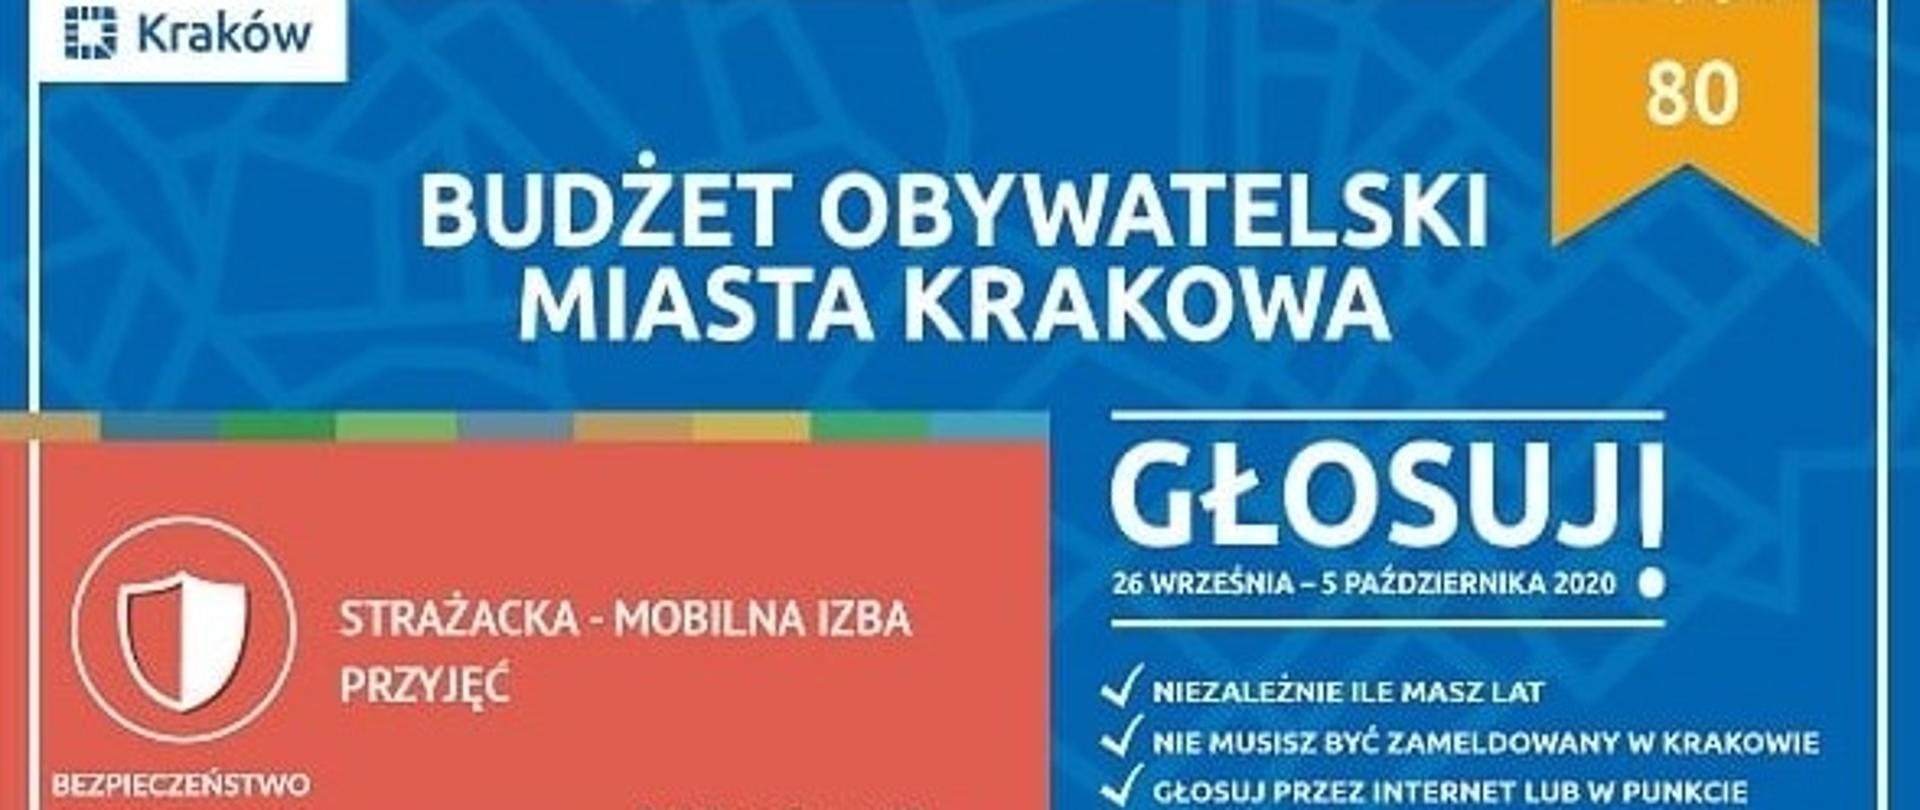 Zdjęcie przedstawia widok ulotki głosowania na projekt nr 80 w ramach budżetu obywatelskiego Miasta Krakowa nr 80 dot. Strażackiej - Mobilnej Izby Przyjęć